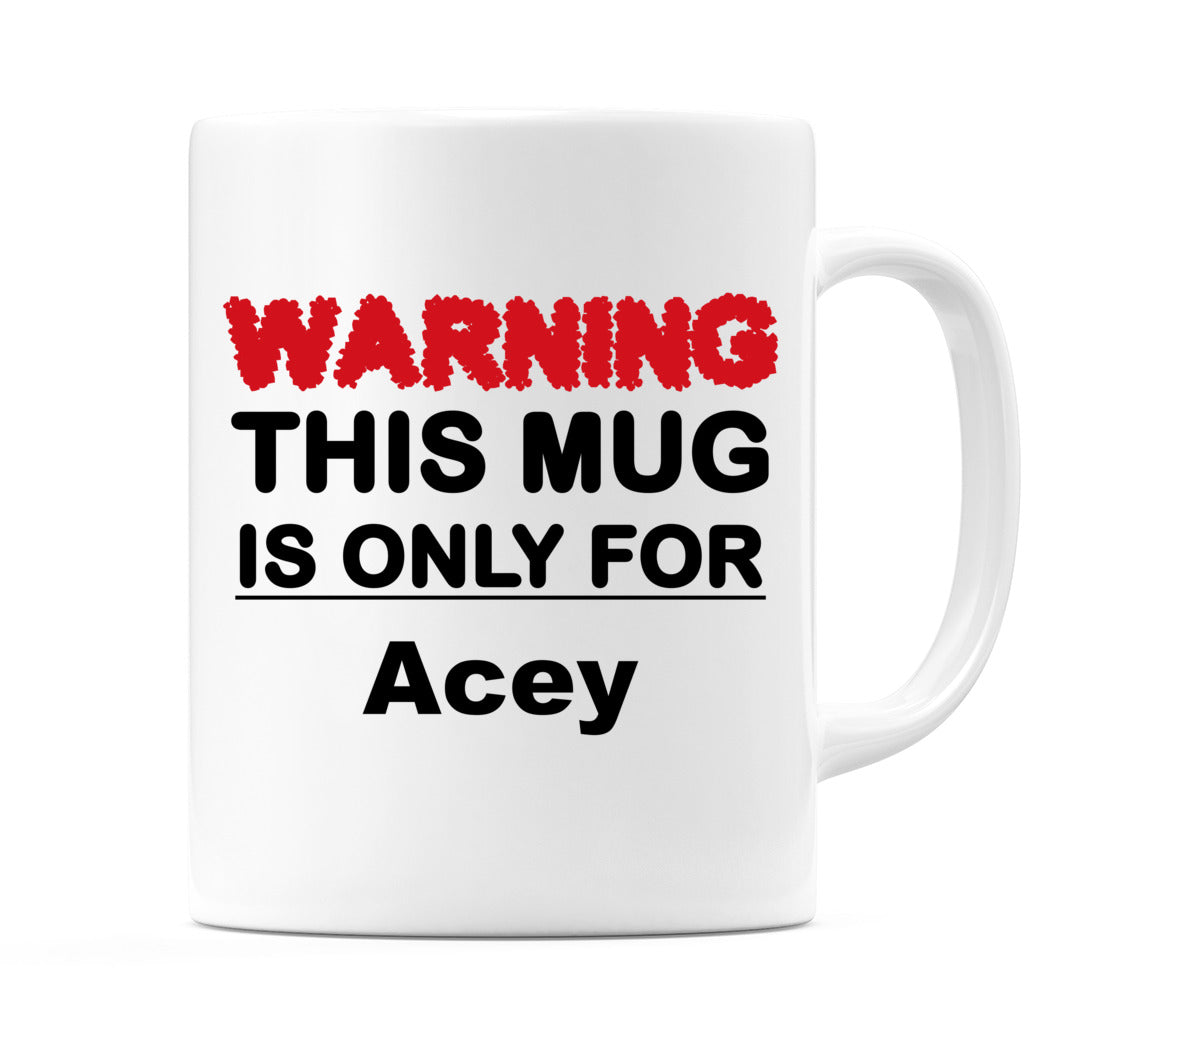 Warning This Mug is ONLY for Acey Mug